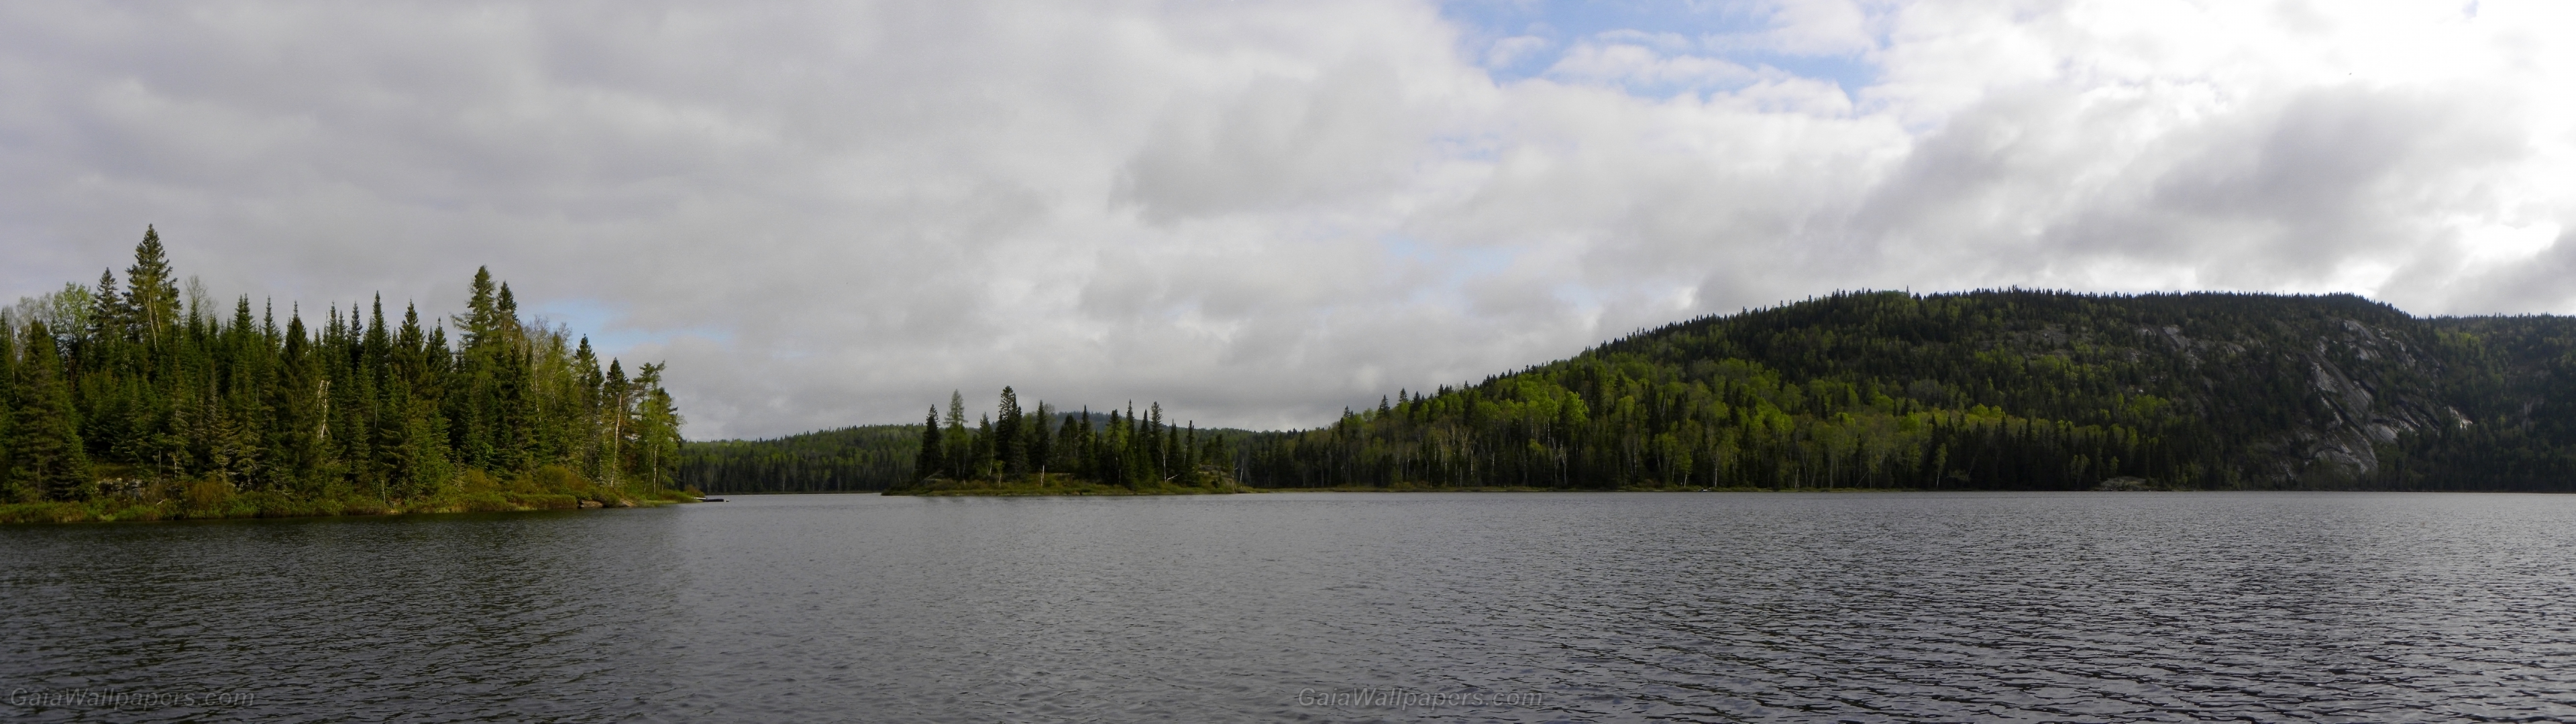 Belle journée nuageuse sur un lac sauvage - Fonds d'écran gratuits